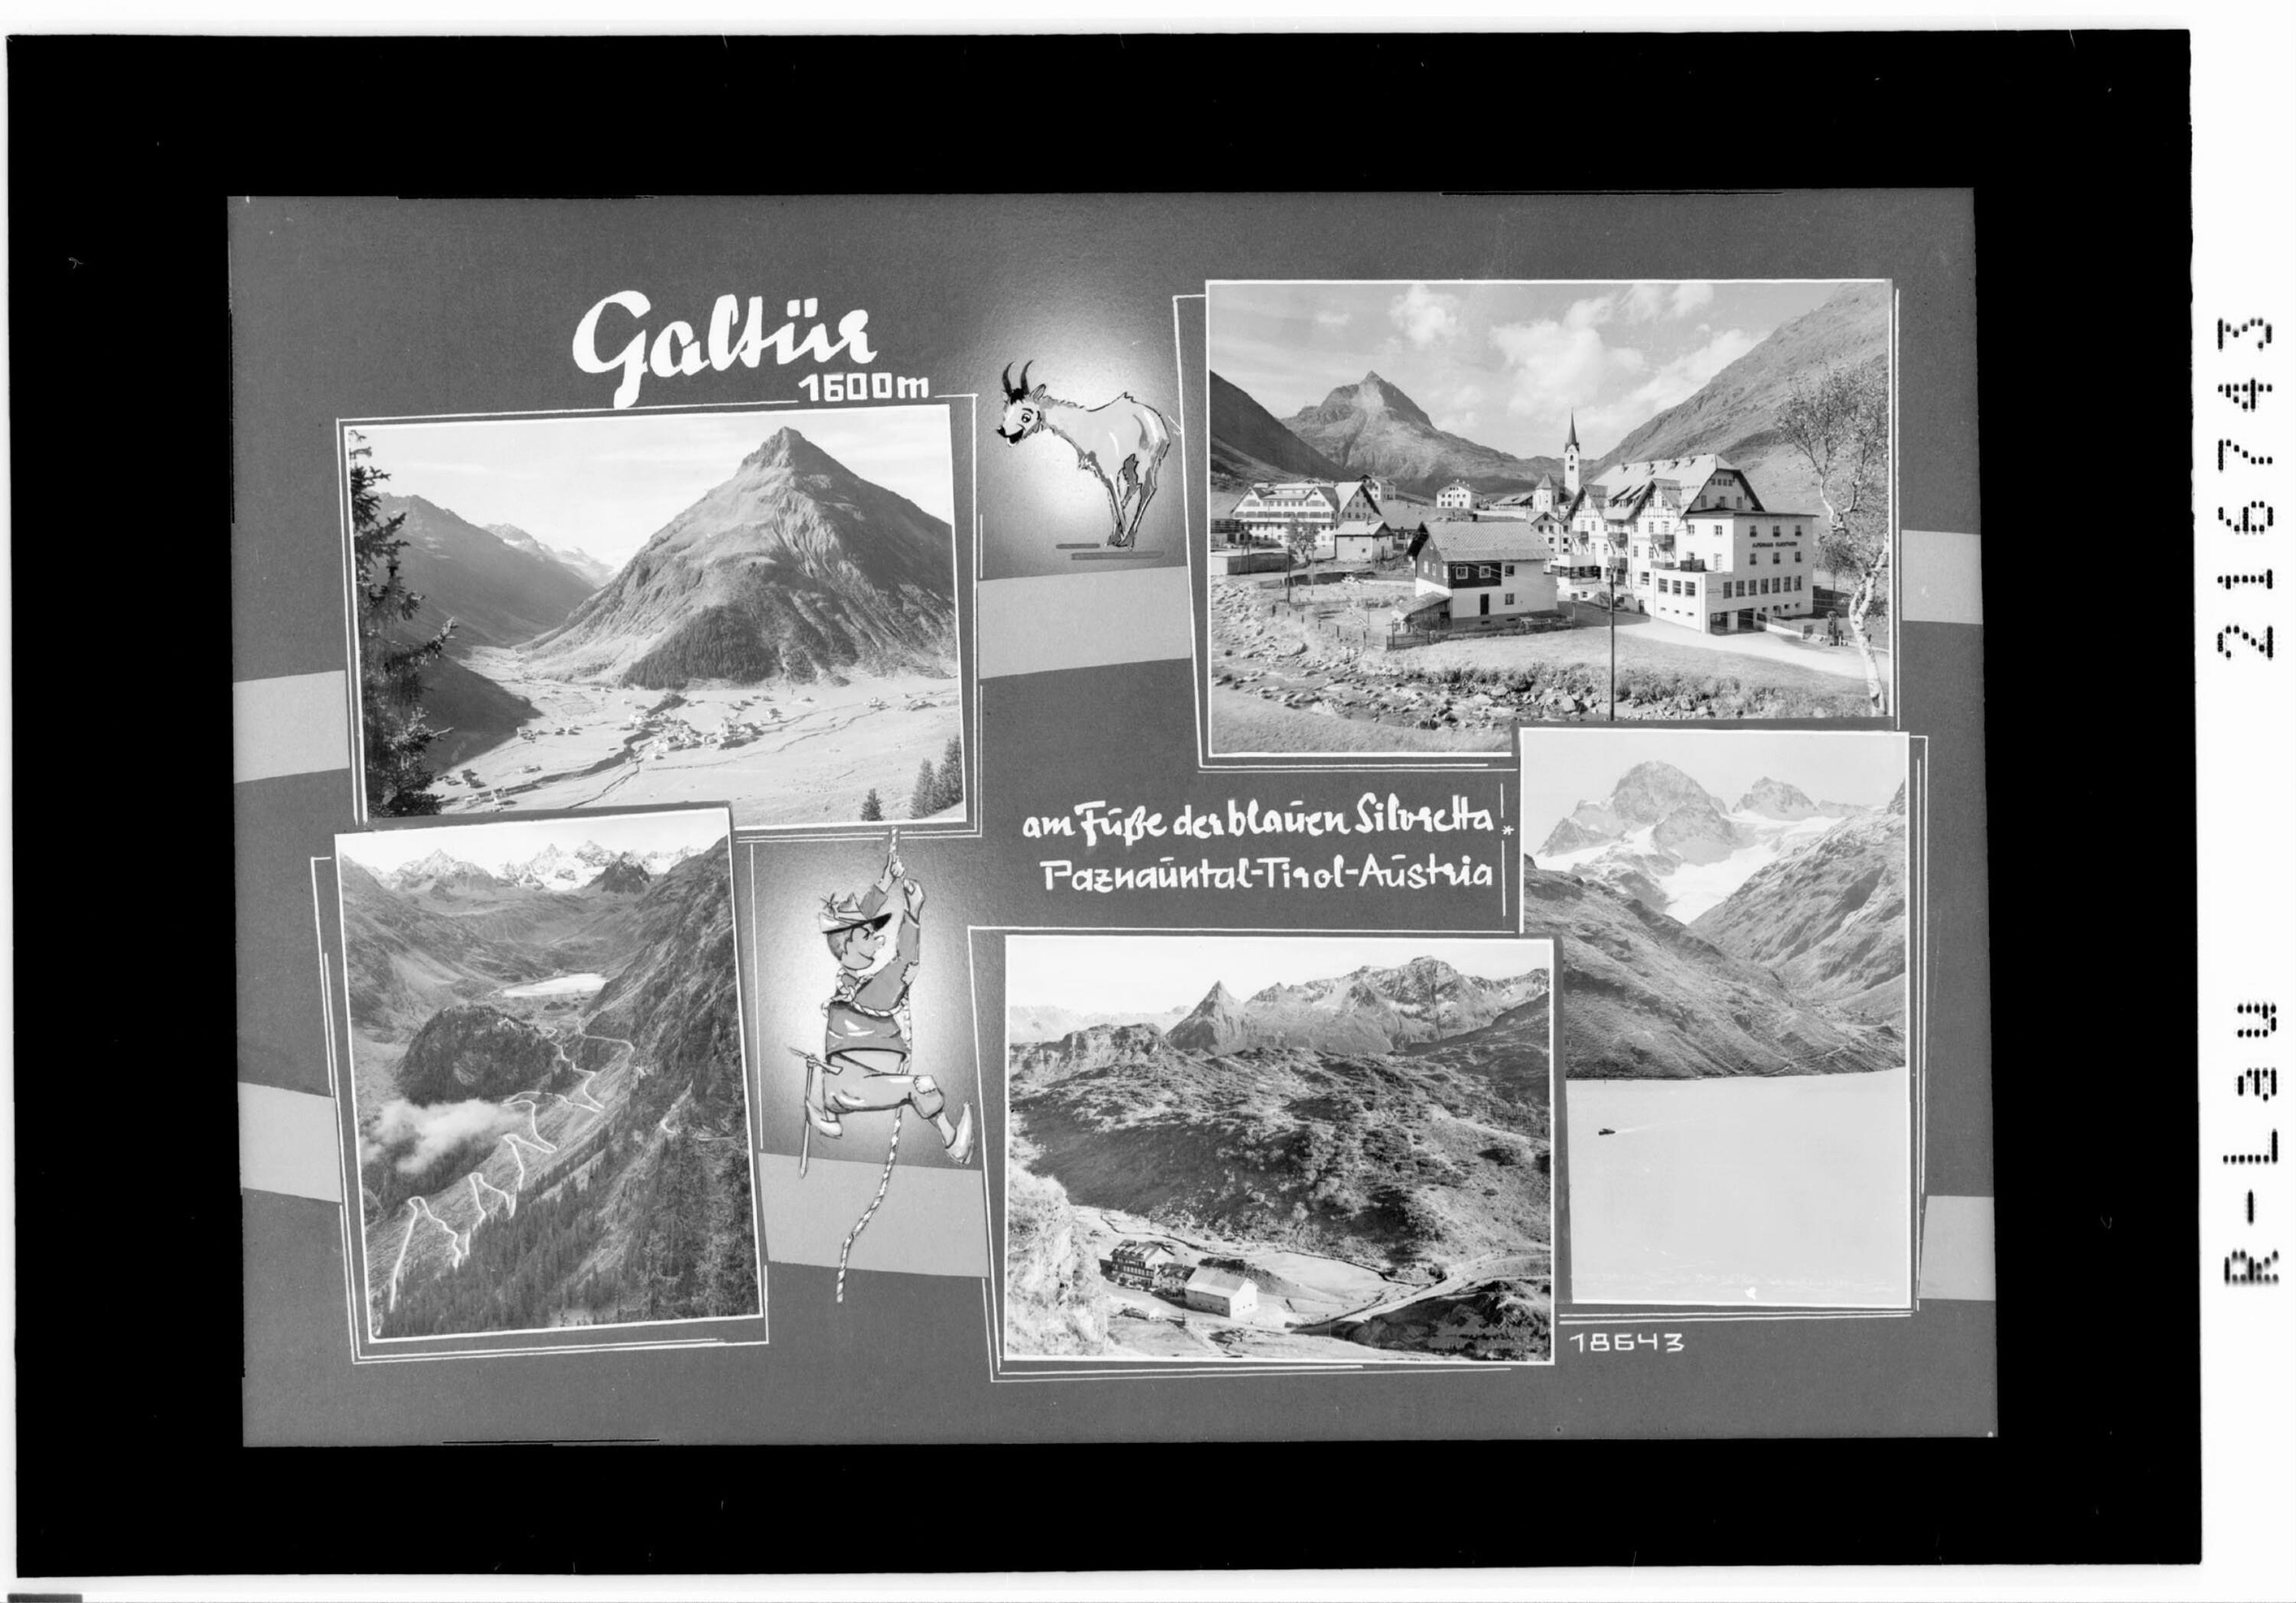 Galtür 1500 m / am Fusse der blauen Silvretta / Paznauntal - Tirol - Austria></div>


    <hr>
    <div class=